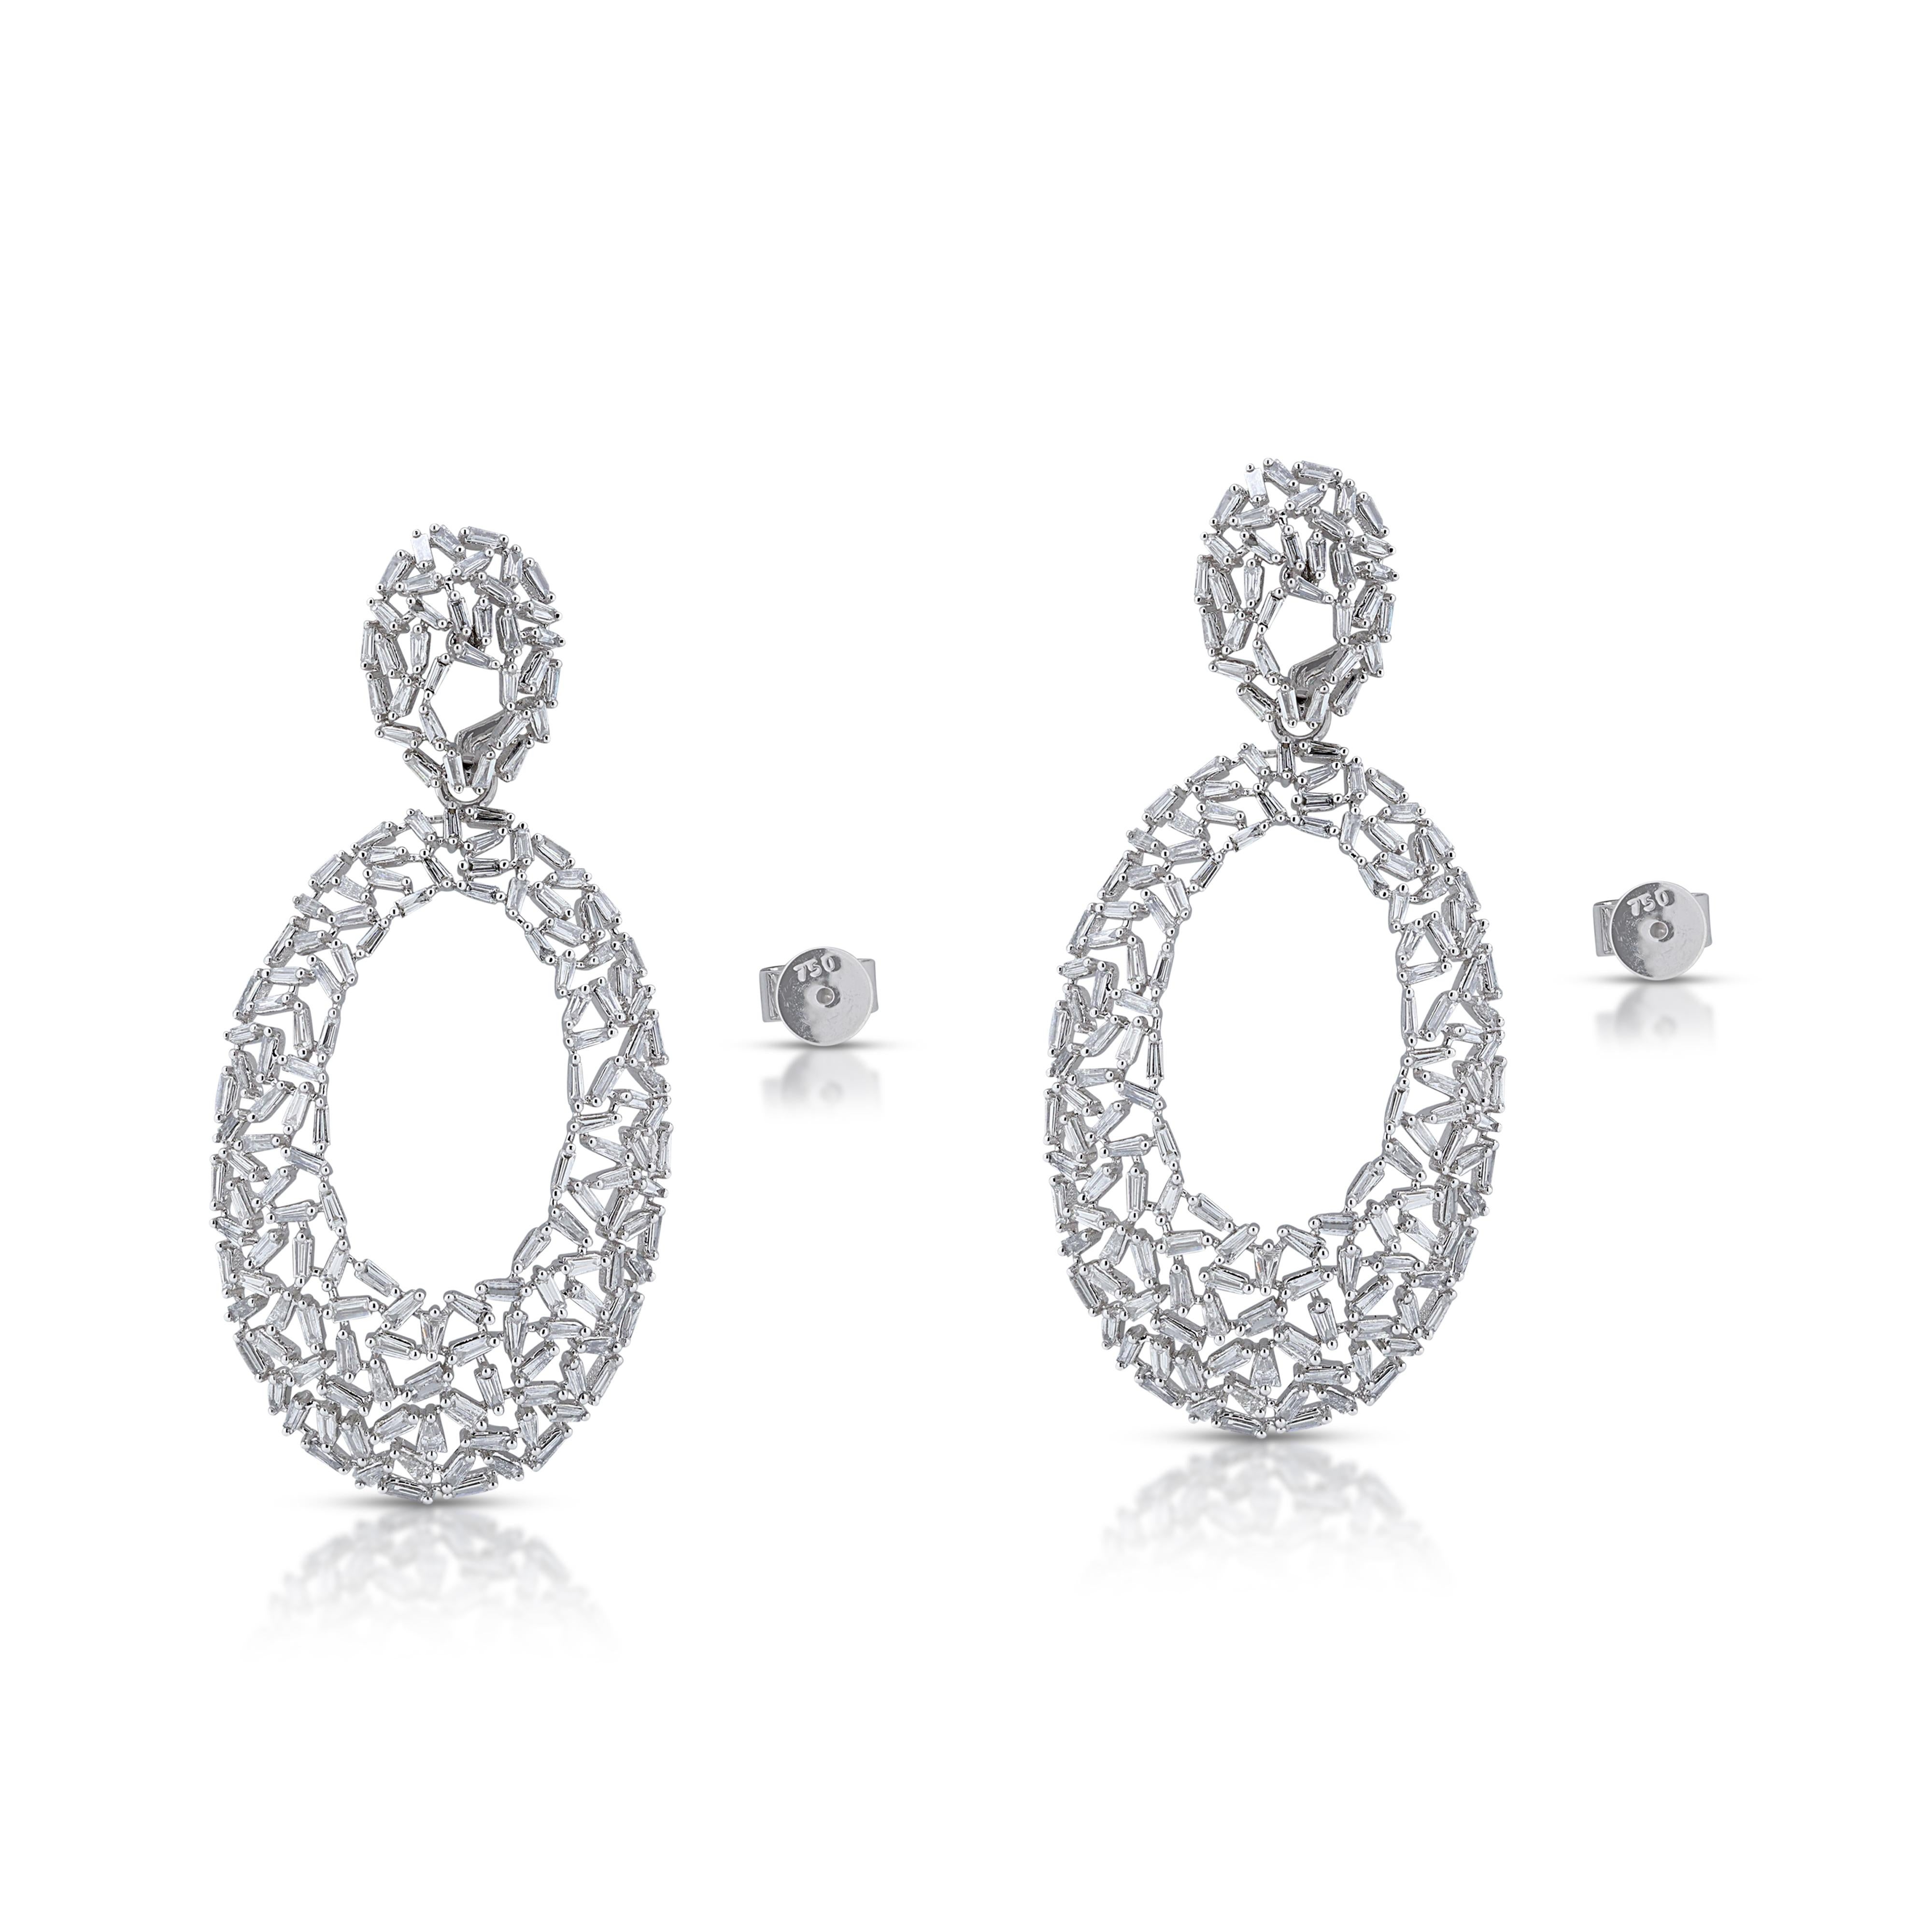 Fabulous 3.26ct Diamonds Drop Earrings in 18K White Gold For Sale 2